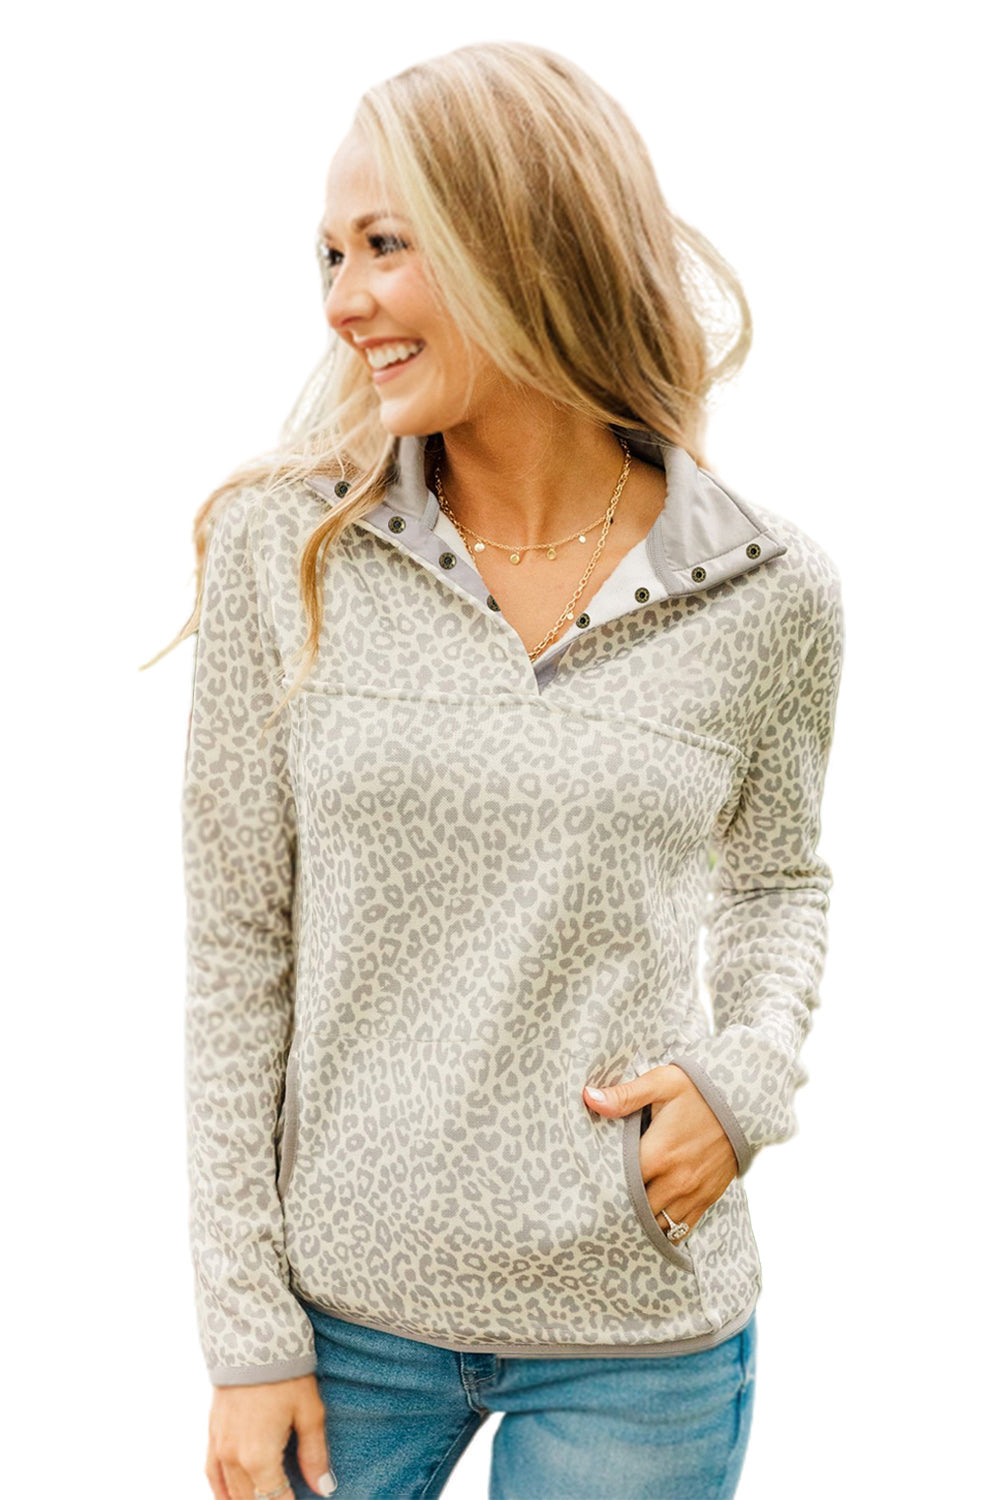 Beige Lapel Snap Leopard Pattern Sweatshirt with Side Pockets